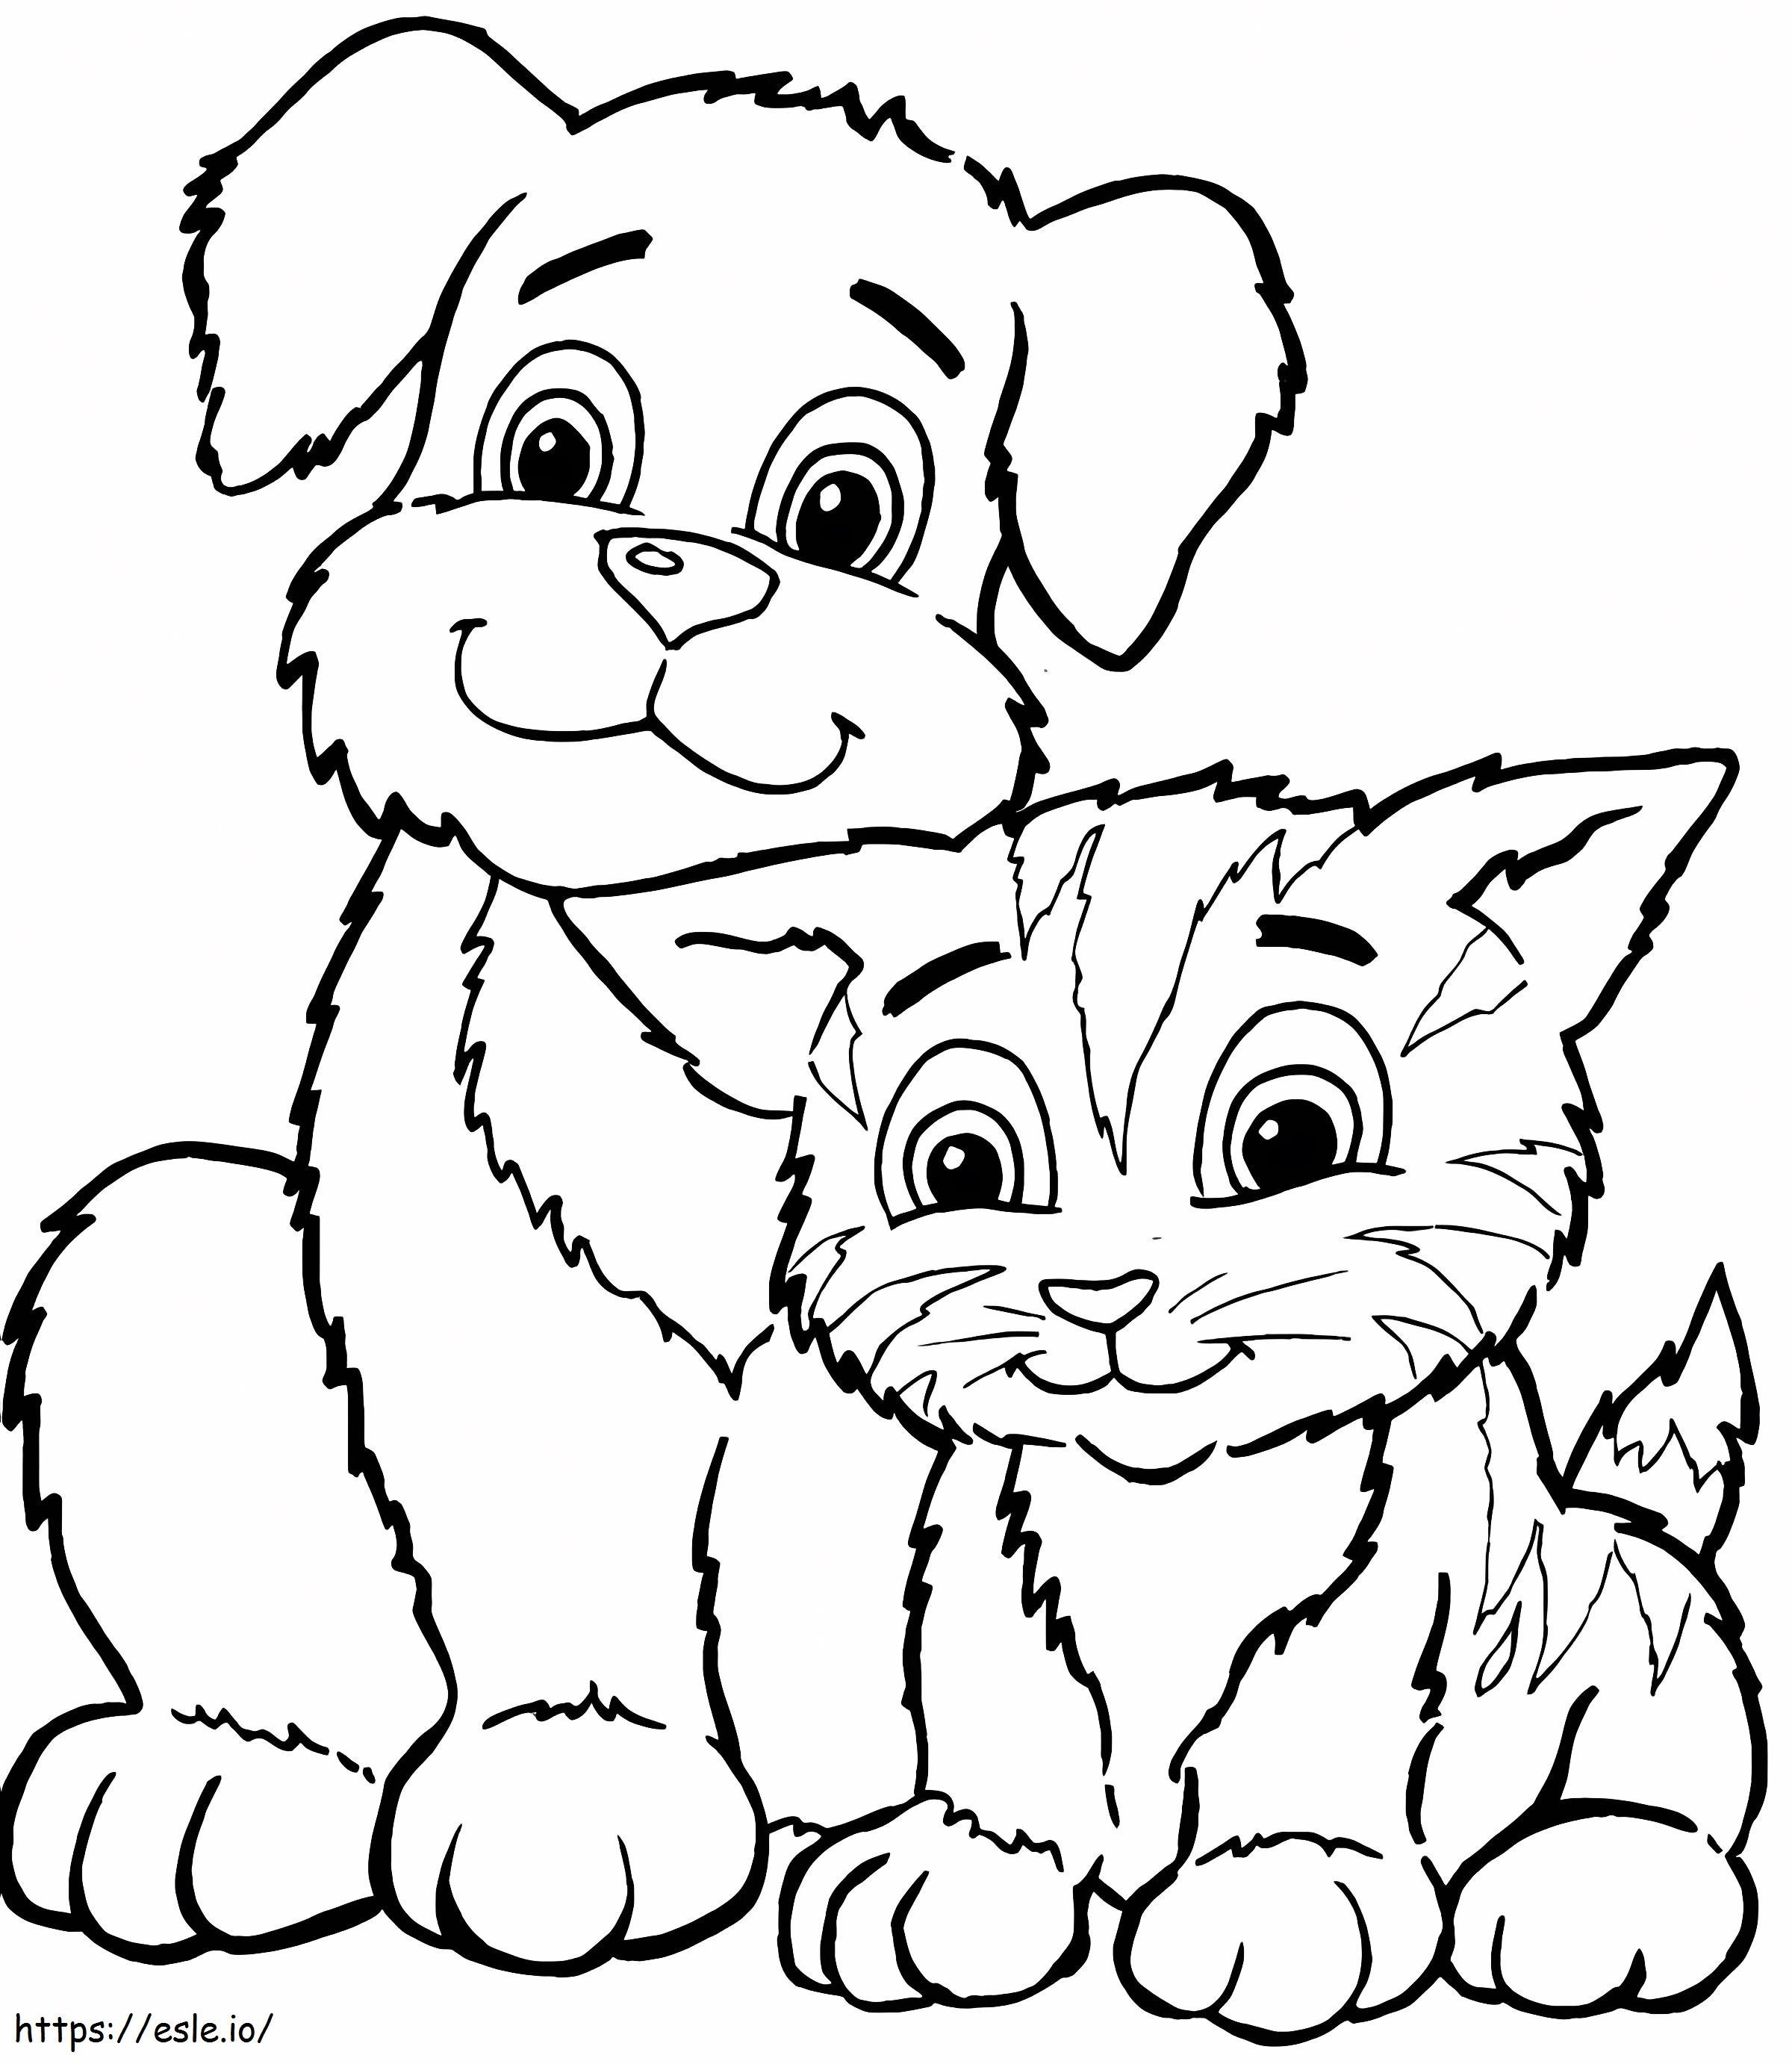 Niedlicher Hund und Katze ausmalbilder